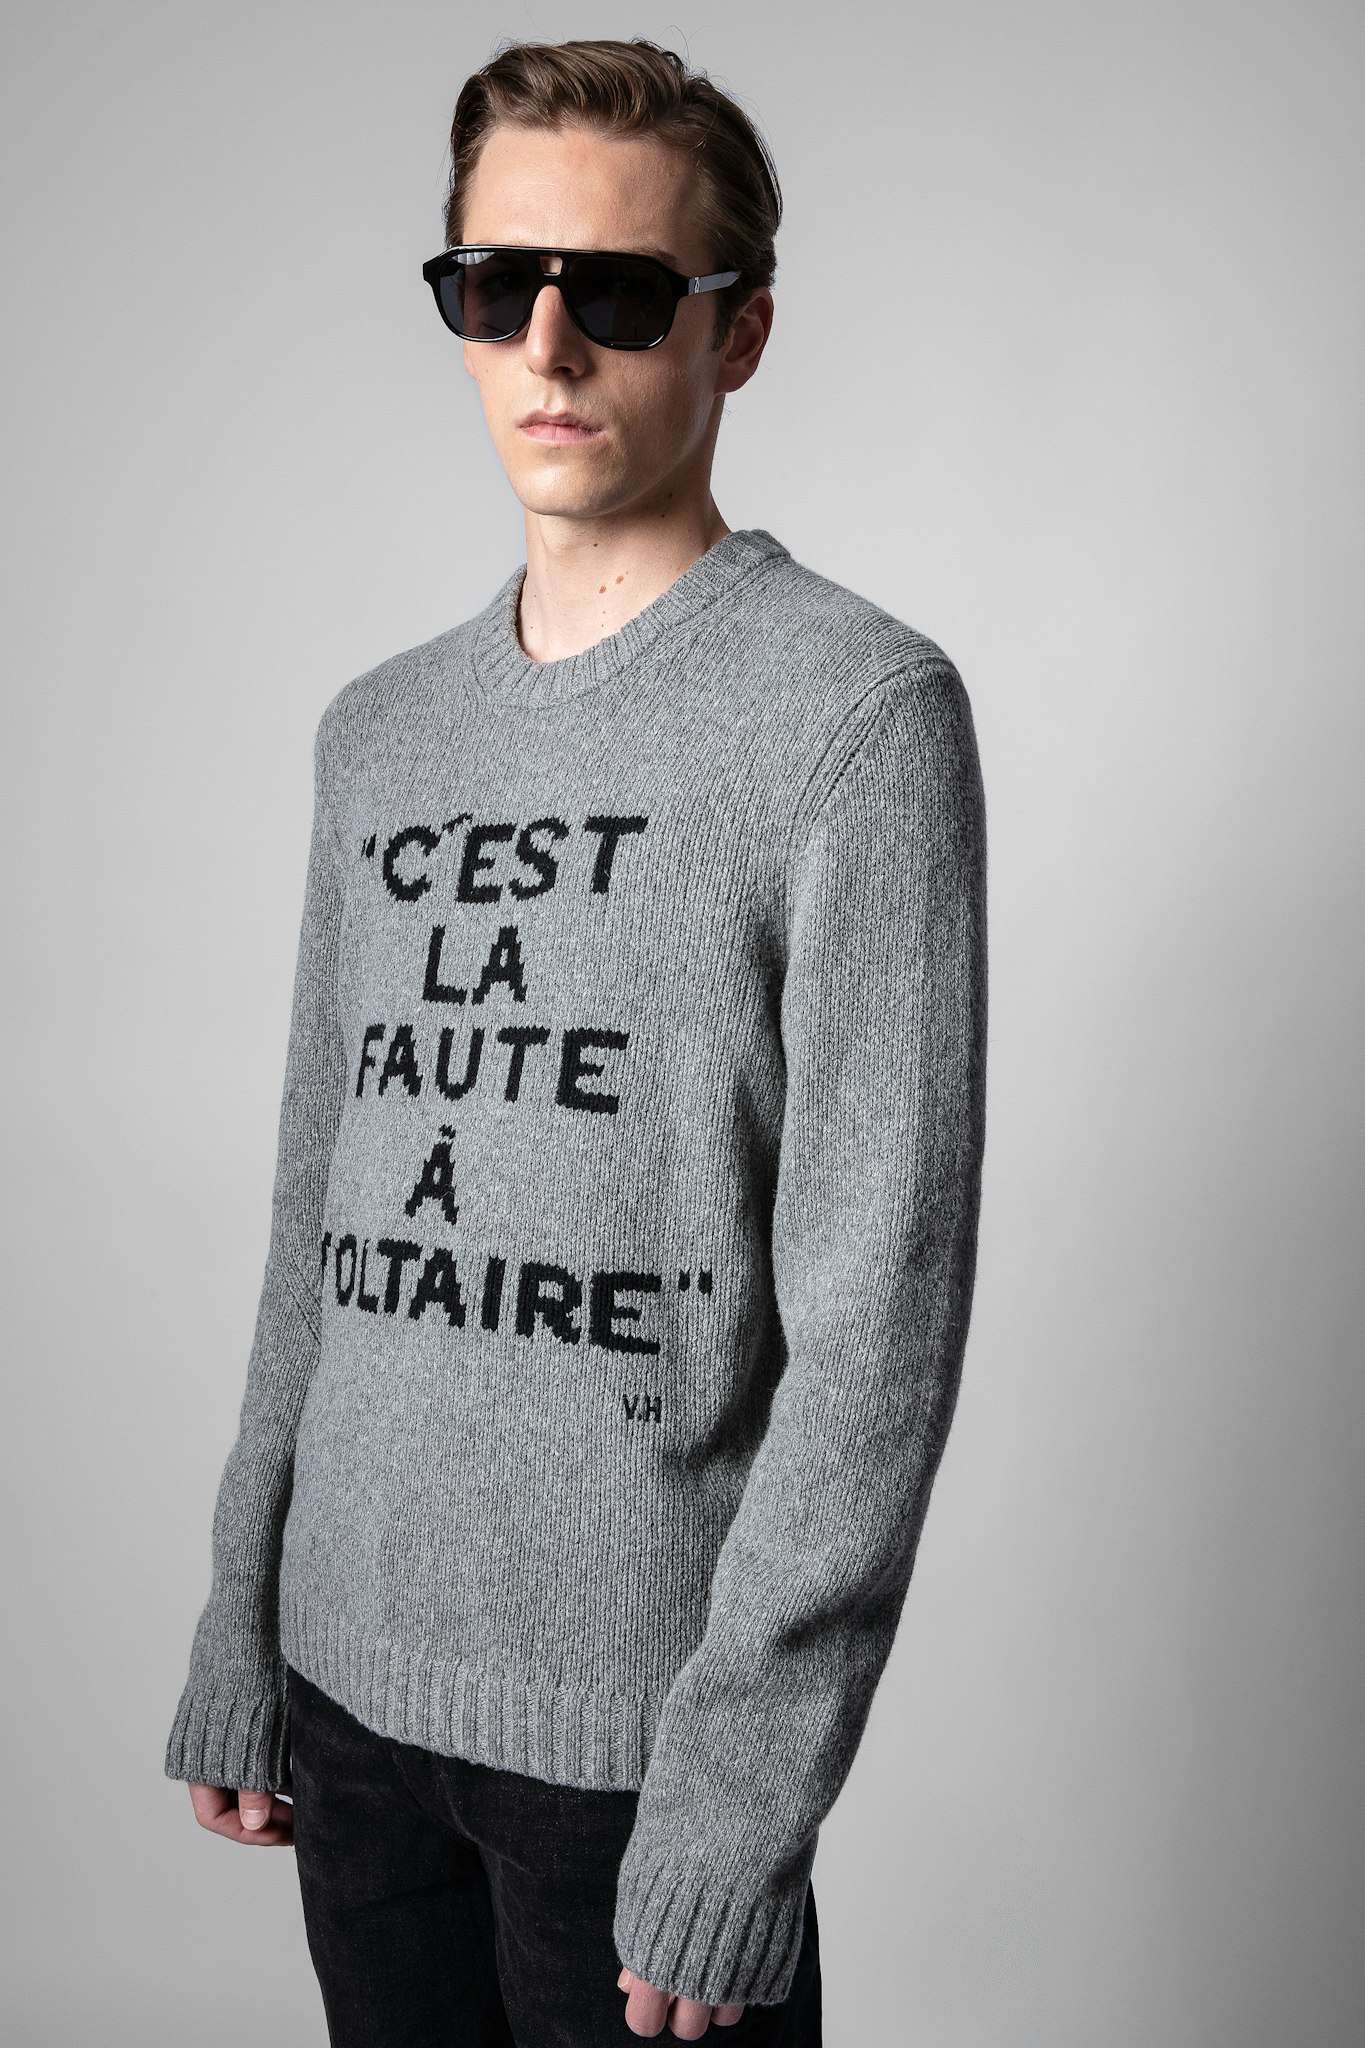 Kennedy La Faute À Voltaire Sweater 